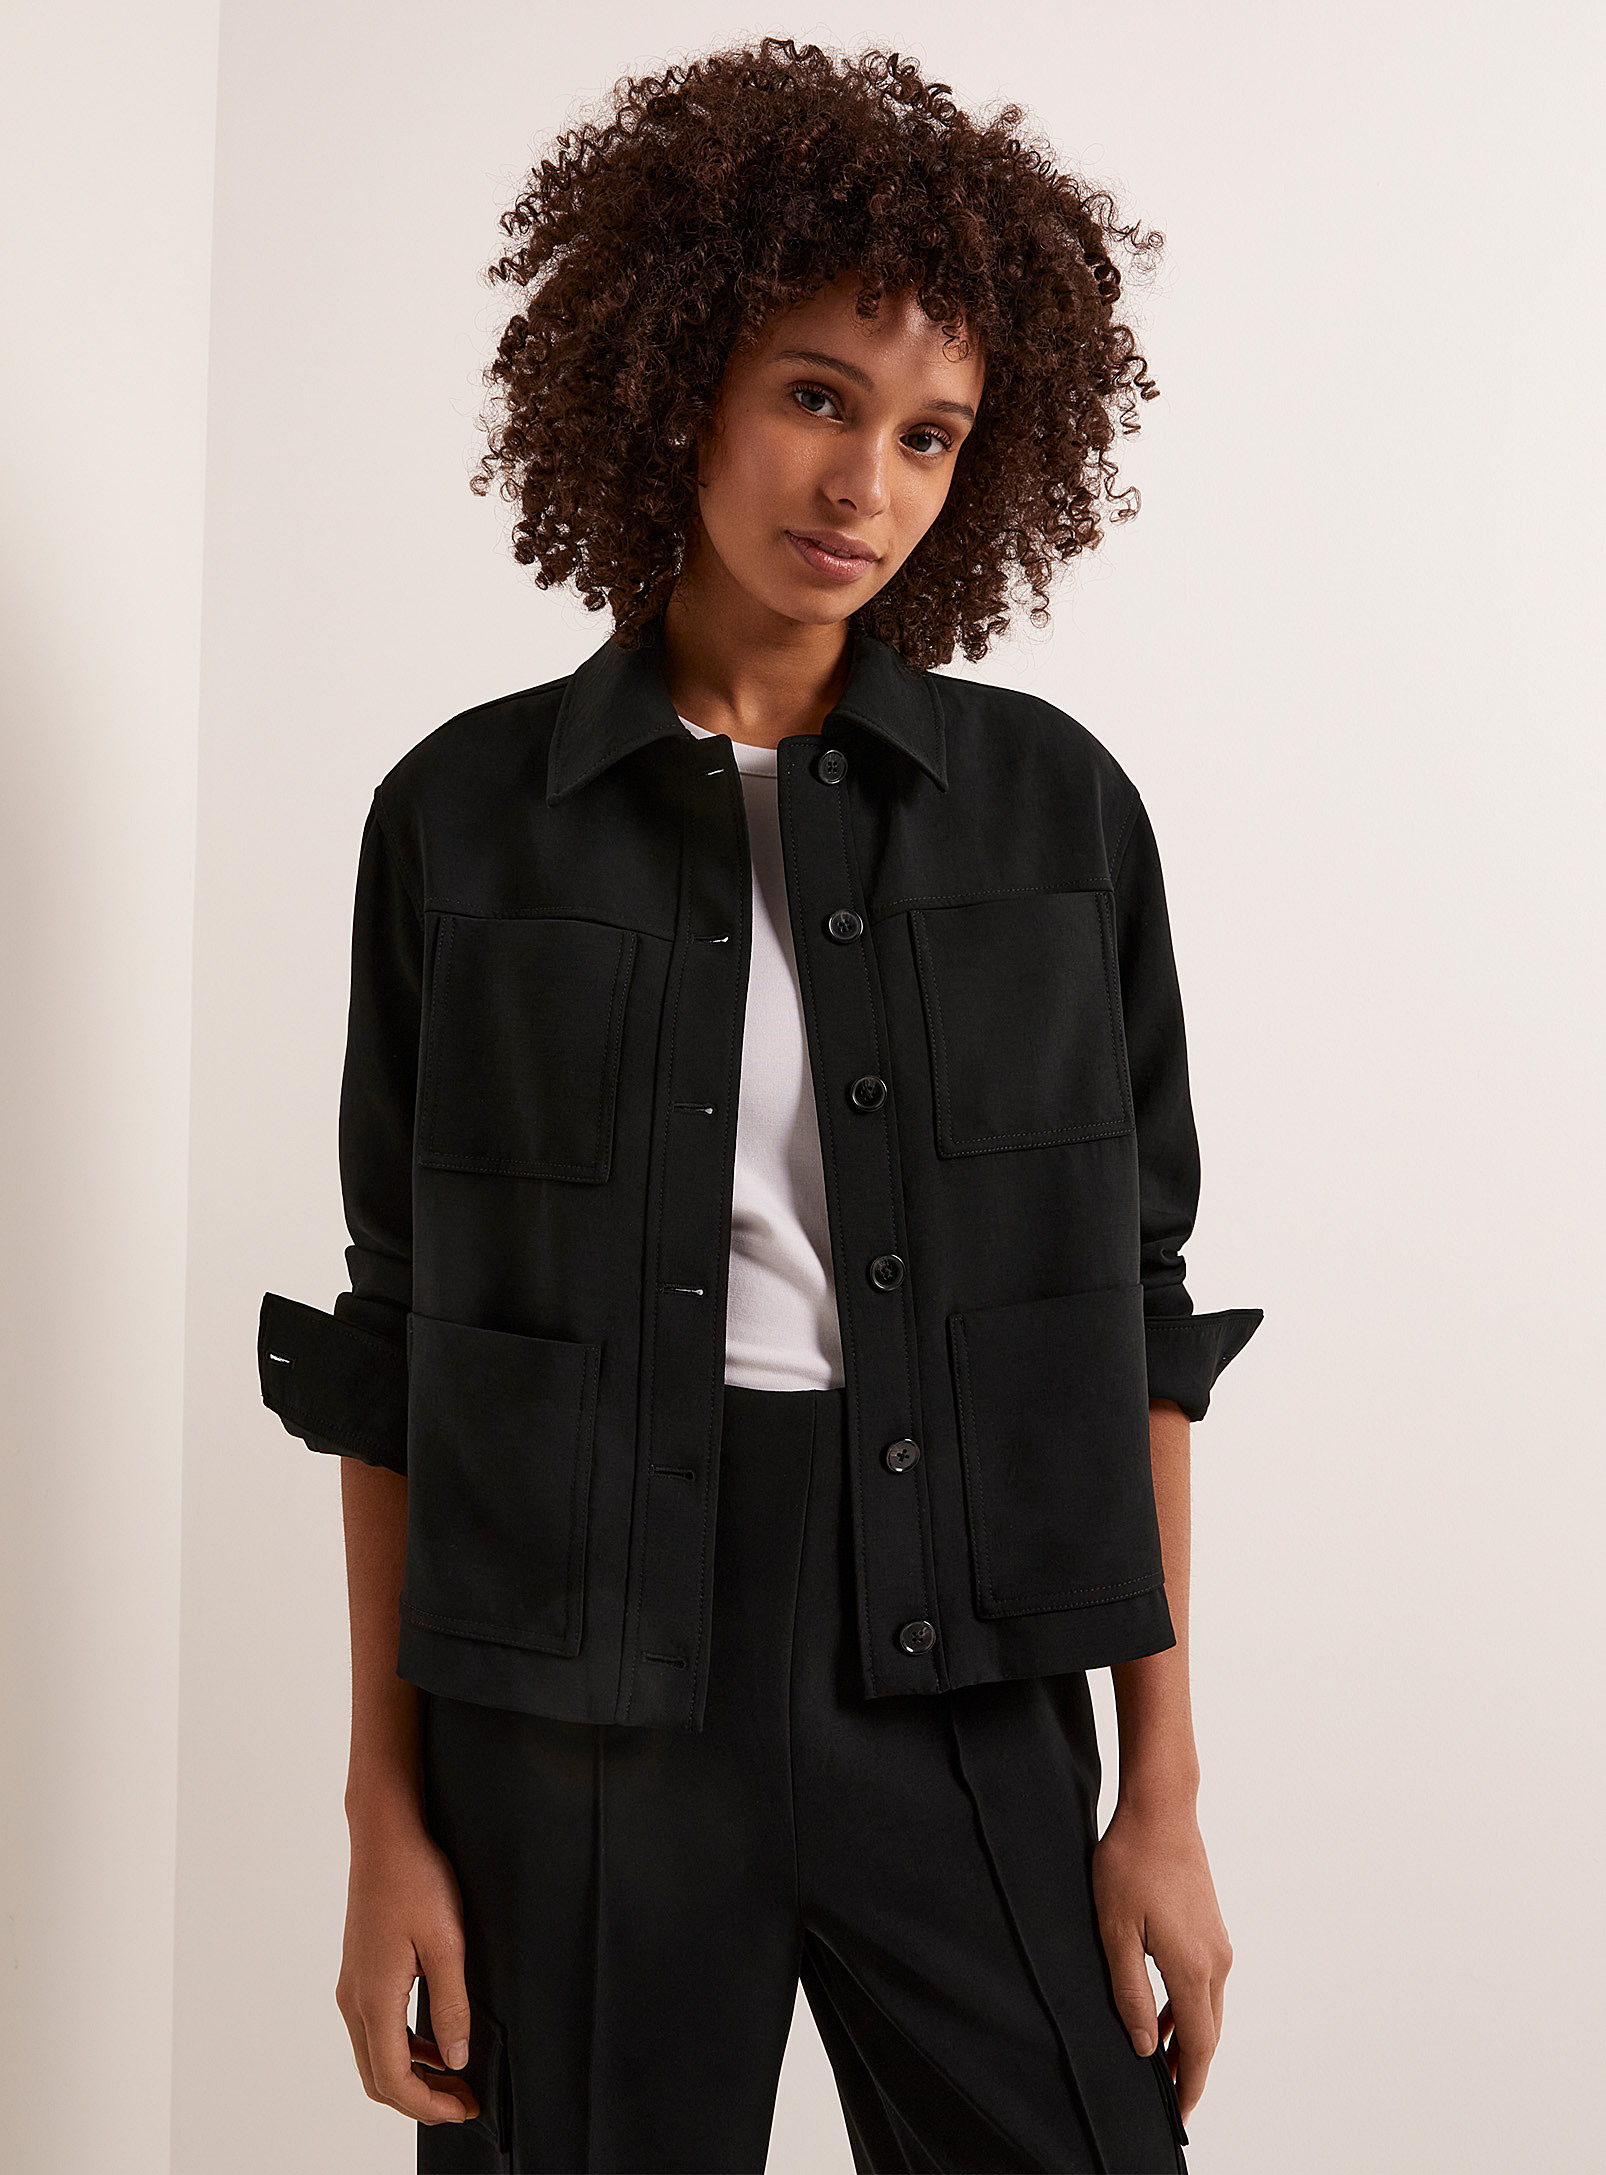 Contemporaine - Women's Patch pocket textured crepe jacket